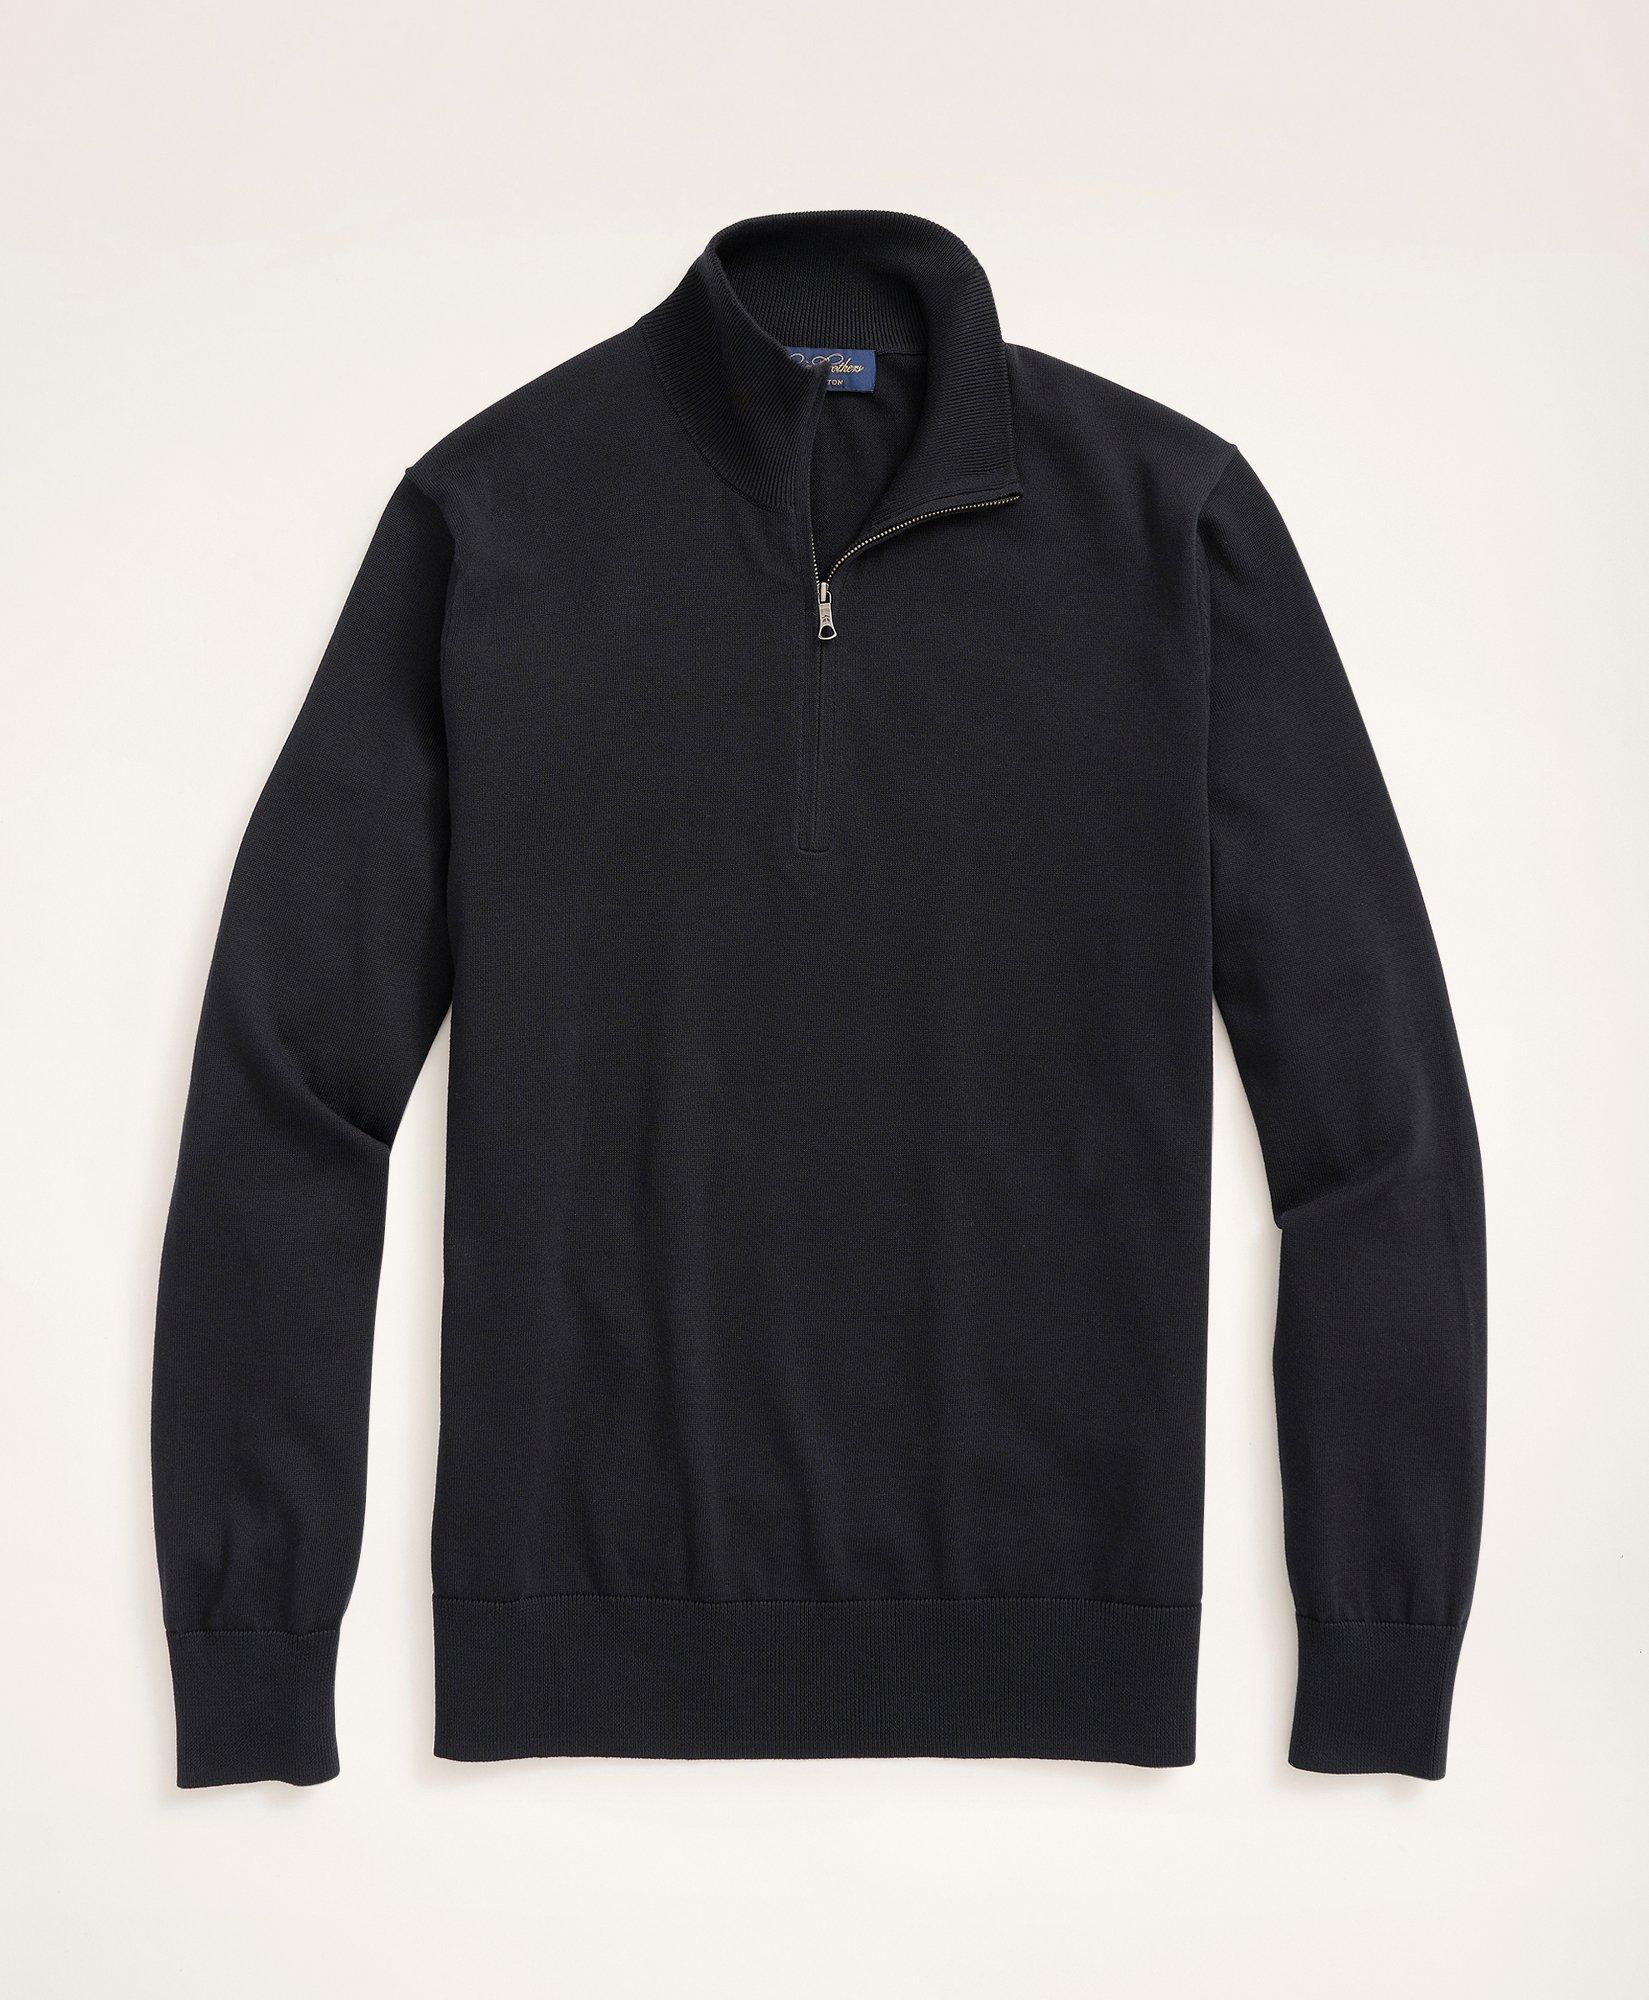 Brooks Brothers Big & Tall Supima Cotton Half-zip Sweater | Black | Size 4x Tall